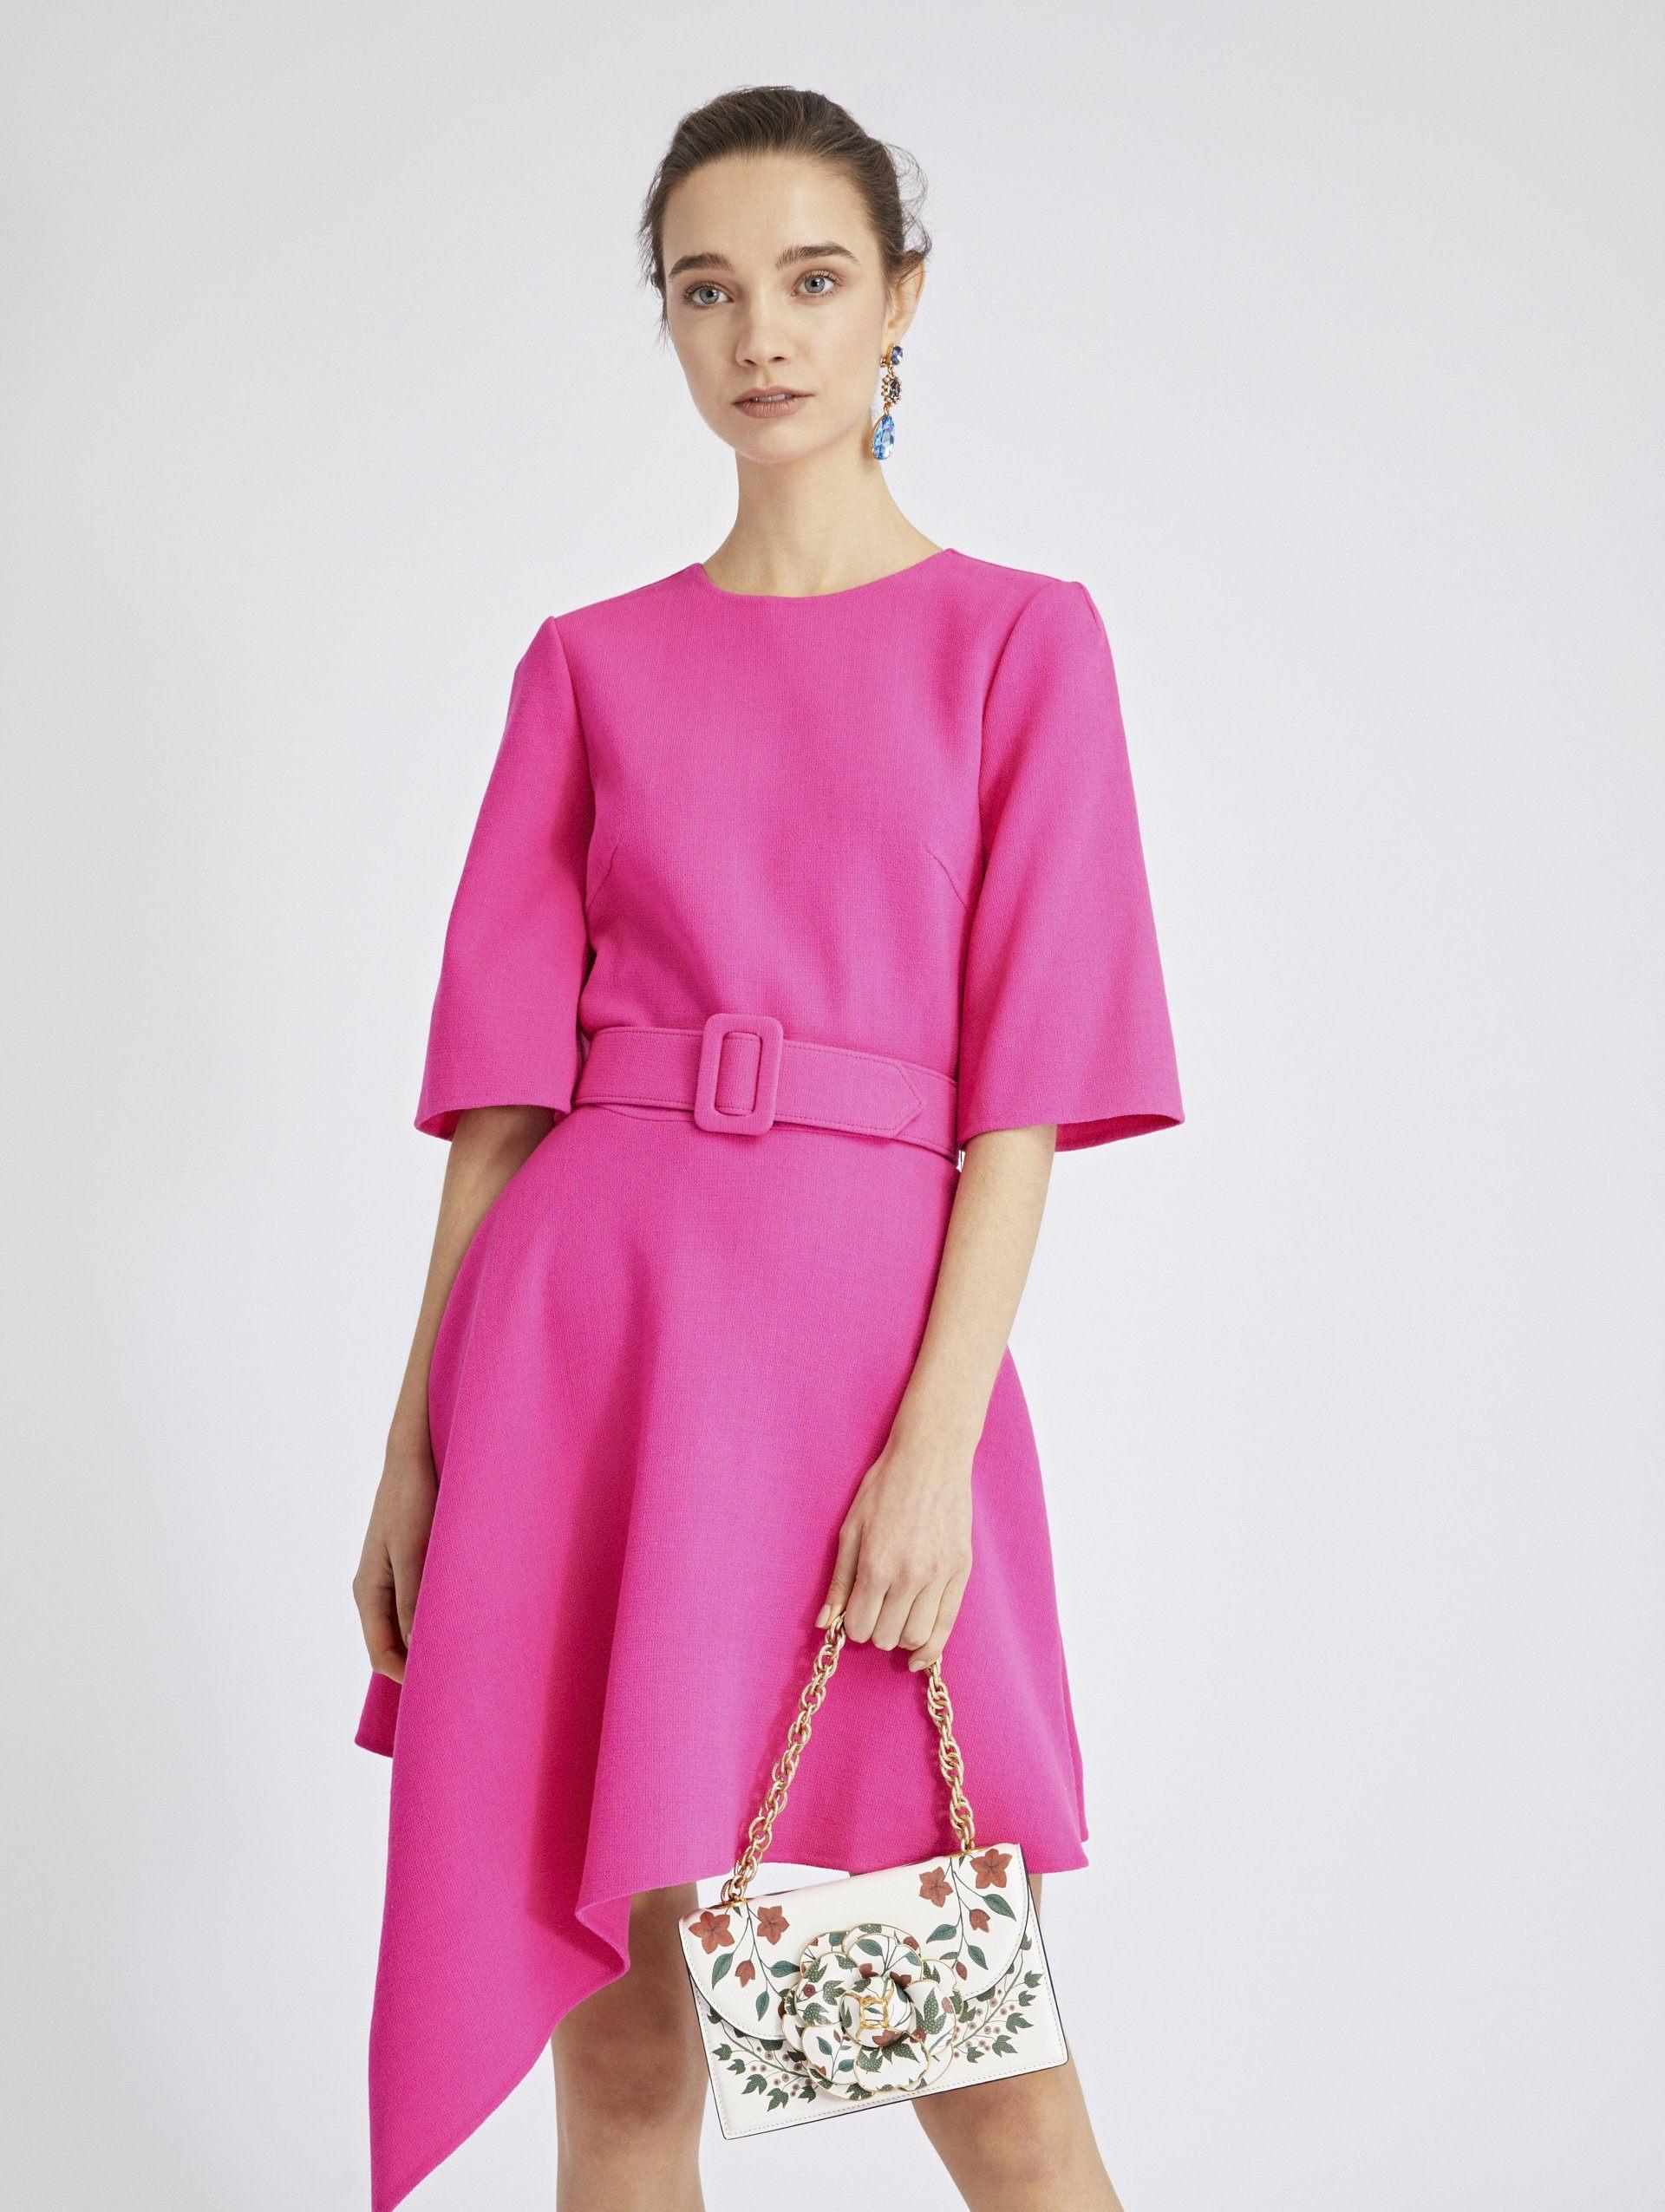 Oscar de la Renta Asymmetric Stretch-wool Crepe Dress in Pink - Lyst